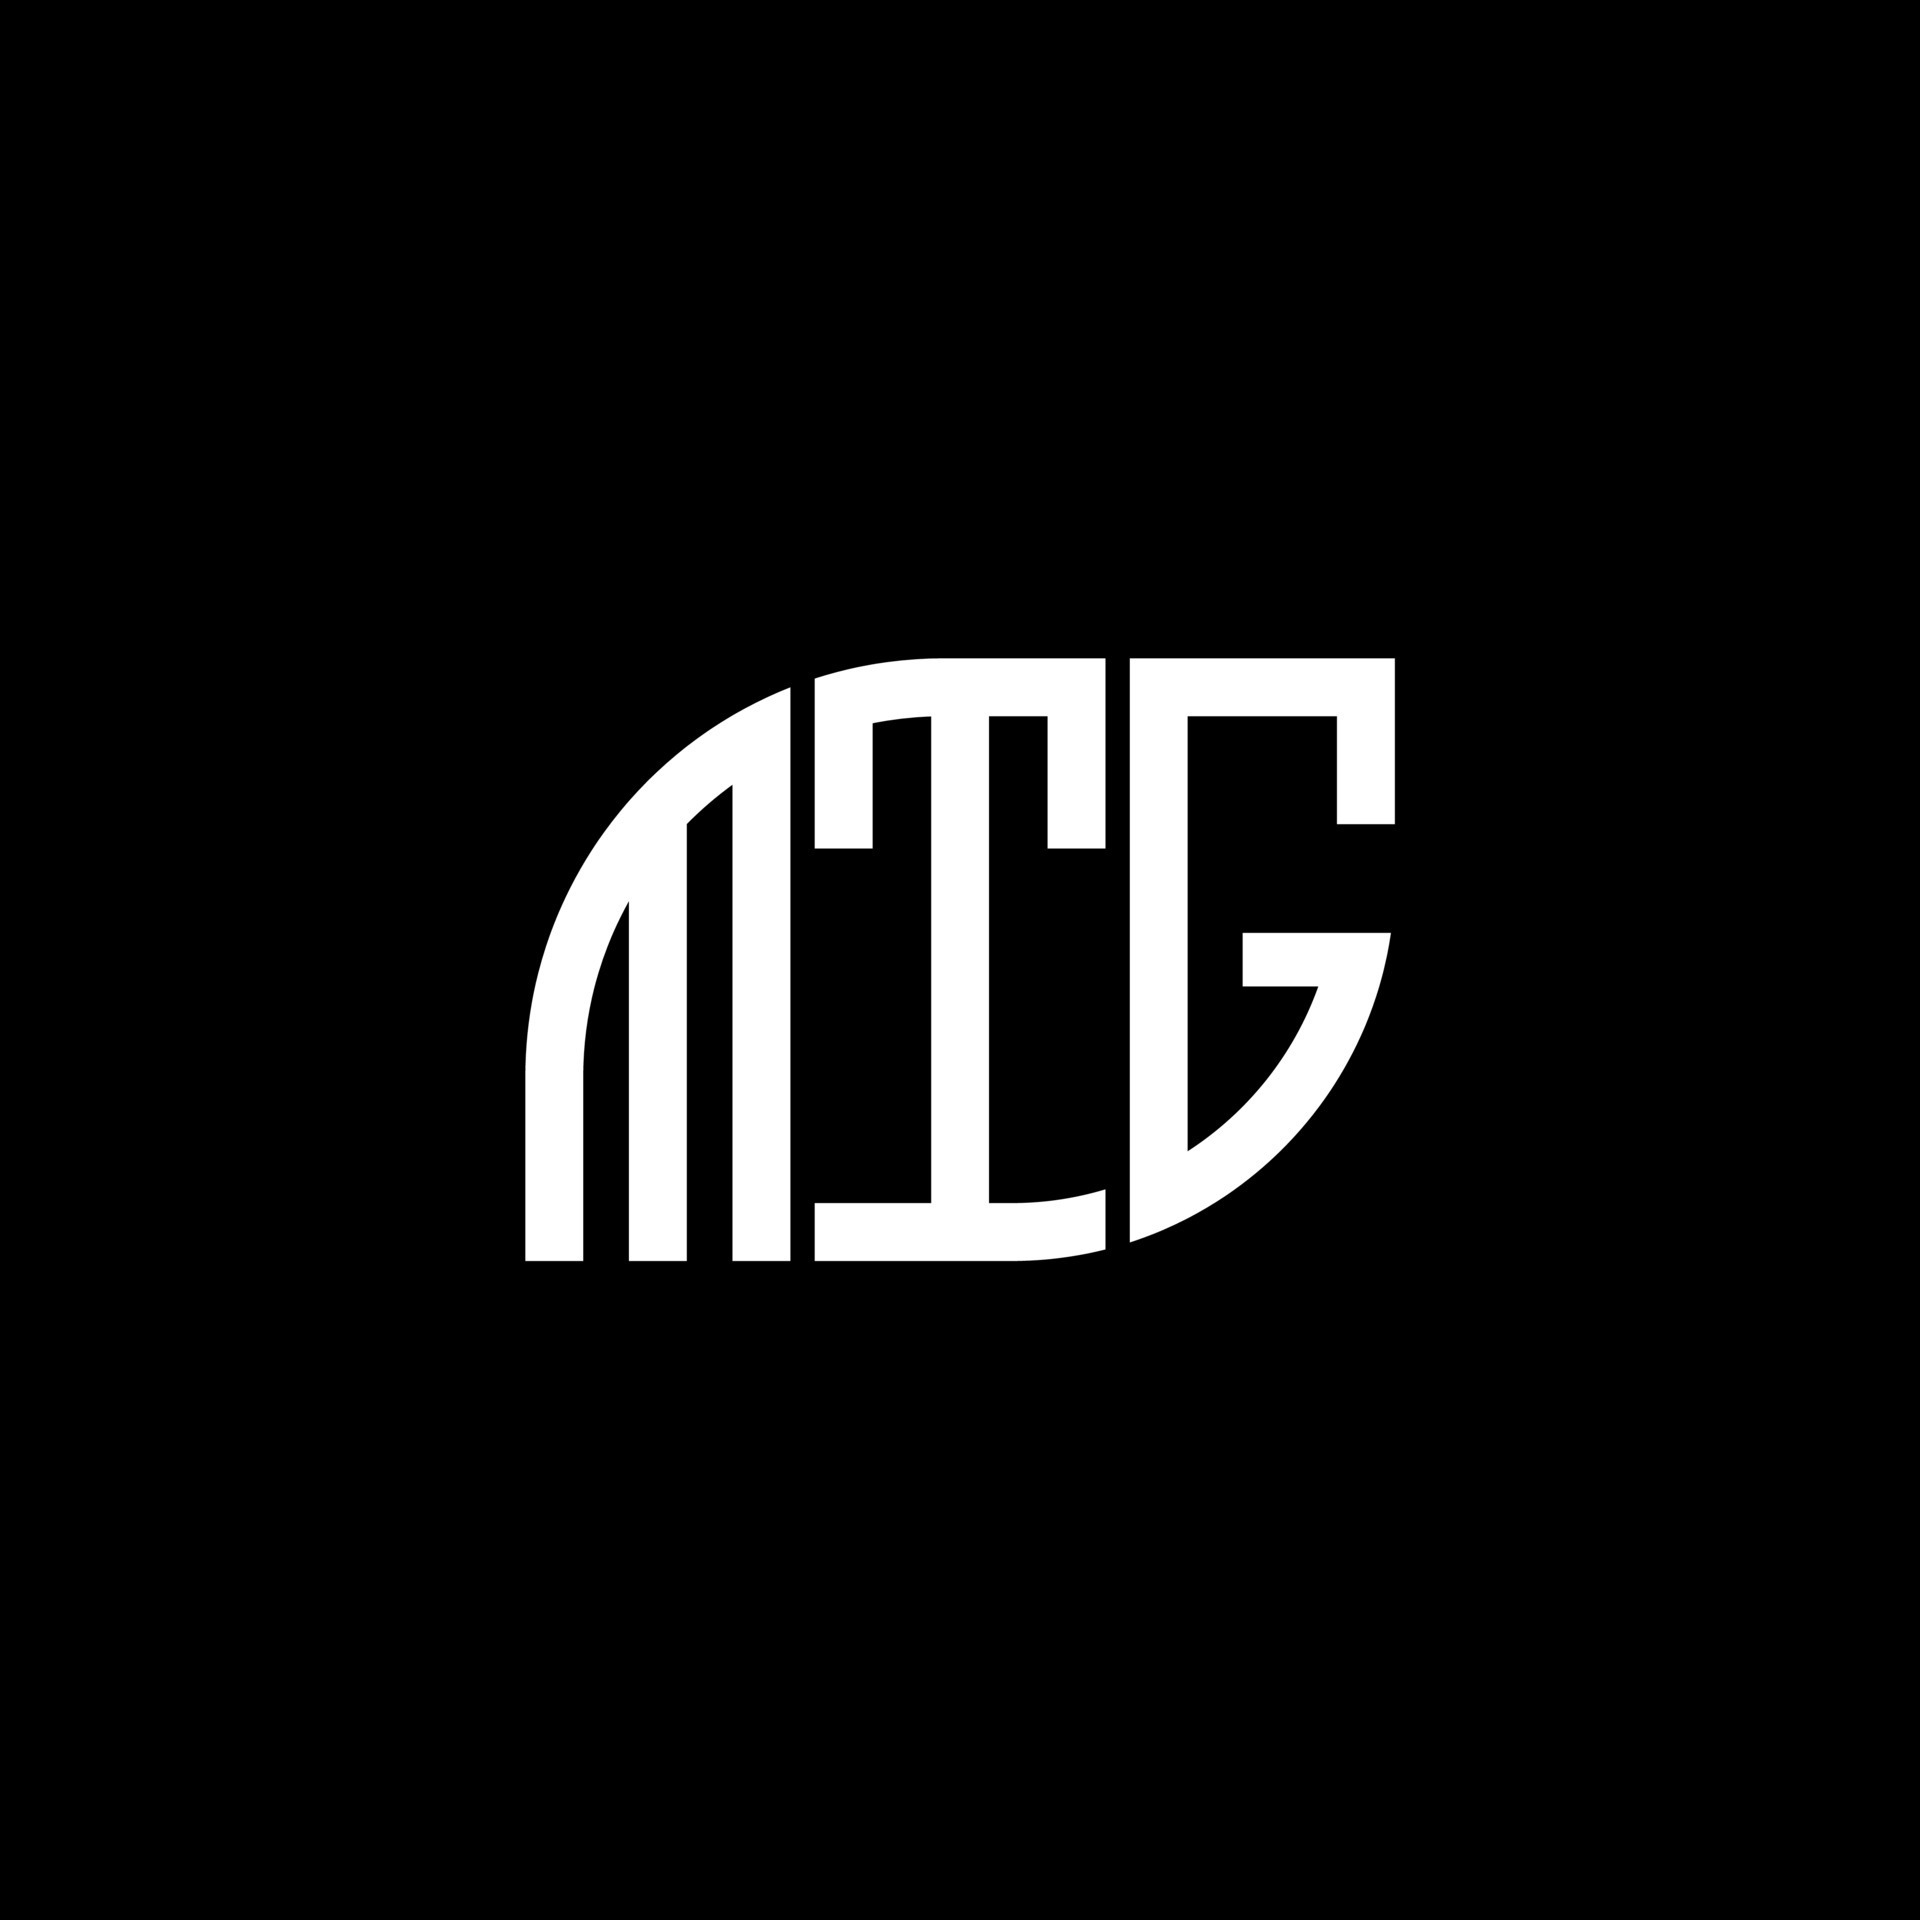 Thiết kế logo chữ MTG trên nền đen: Cảm nhận sự tối giản và độc đáo của thiết kế logo chữ MTG trên nền đen, với tính năng và sự sang trọng trong từng chi tiết. Chính sự tinh tế của họa tiết này sẽ mang đến cho bạn một khởi đầu thú vị cho một dự án sáng tạo.